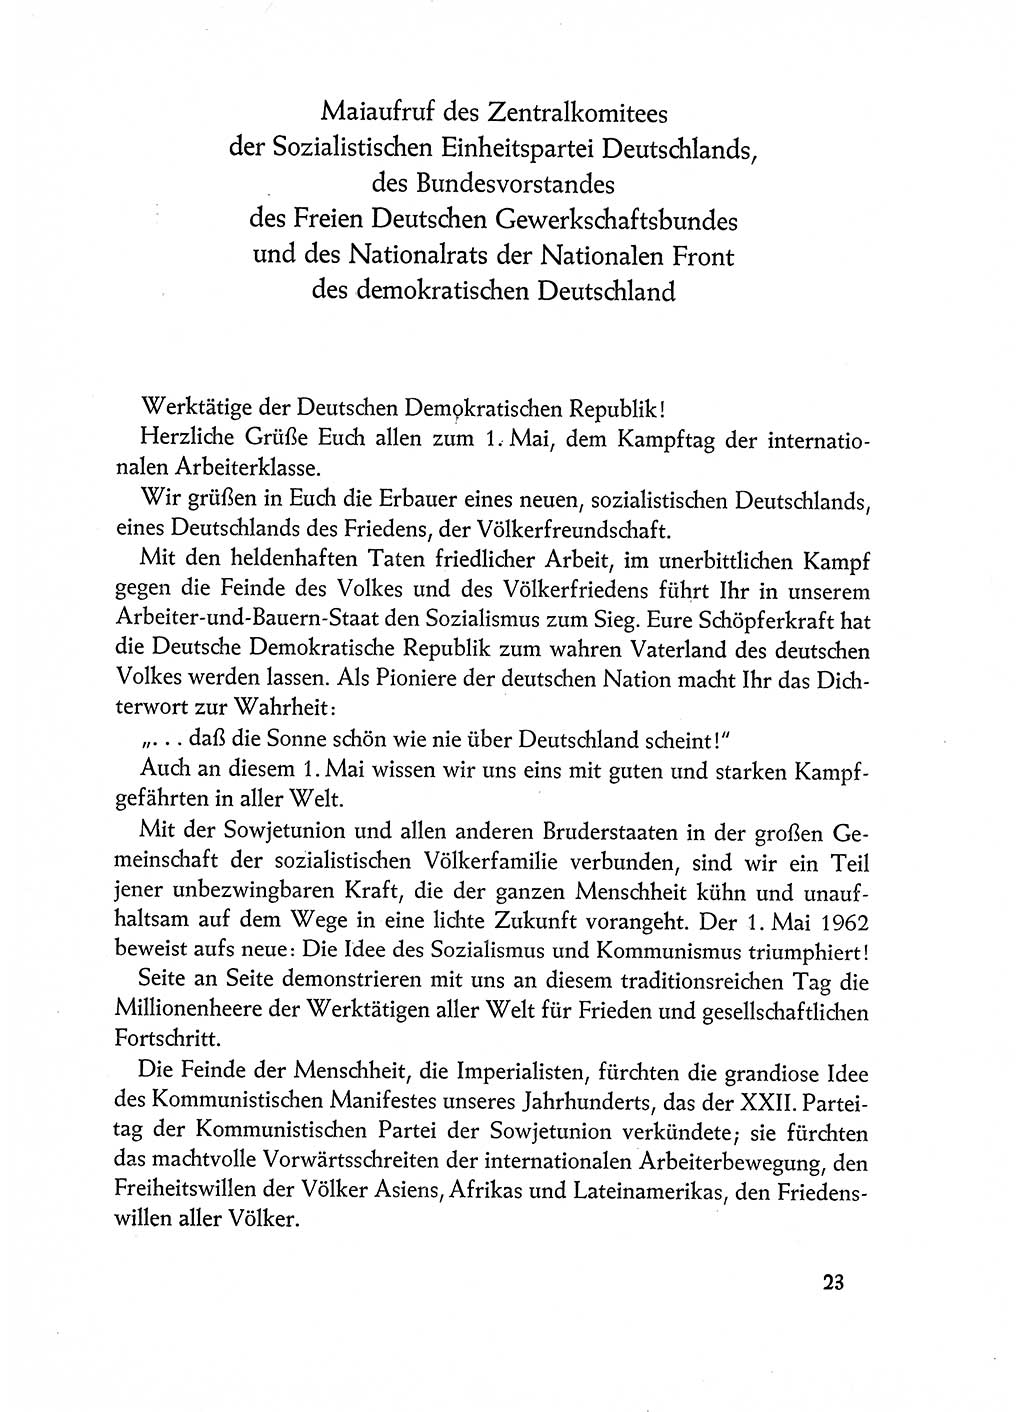 Dokumente der Sozialistischen Einheitspartei Deutschlands (SED) [Deutsche Demokratische Republik (DDR)] 1962-1963, Seite 23 (Dok. SED DDR 1962-1963, S. 23)